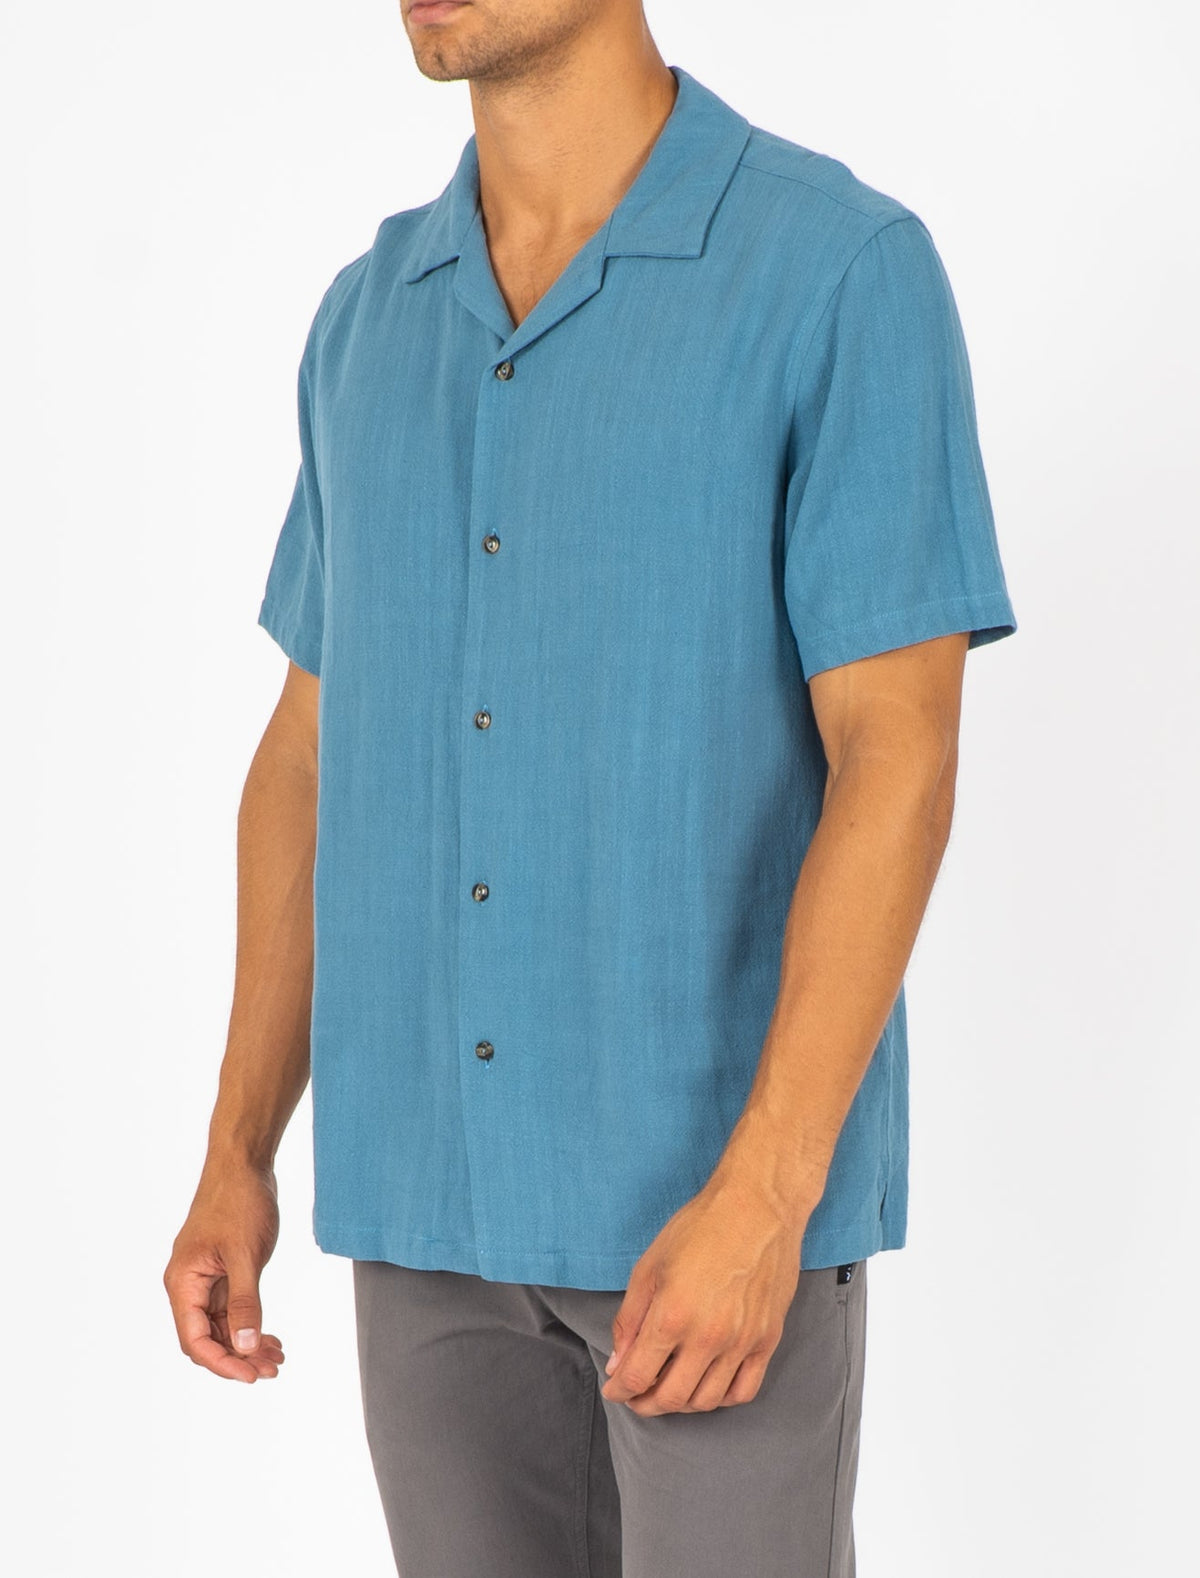 Rusty USA Rehash Short Sleeve Shirt - Denim Blue DENIM BLUE